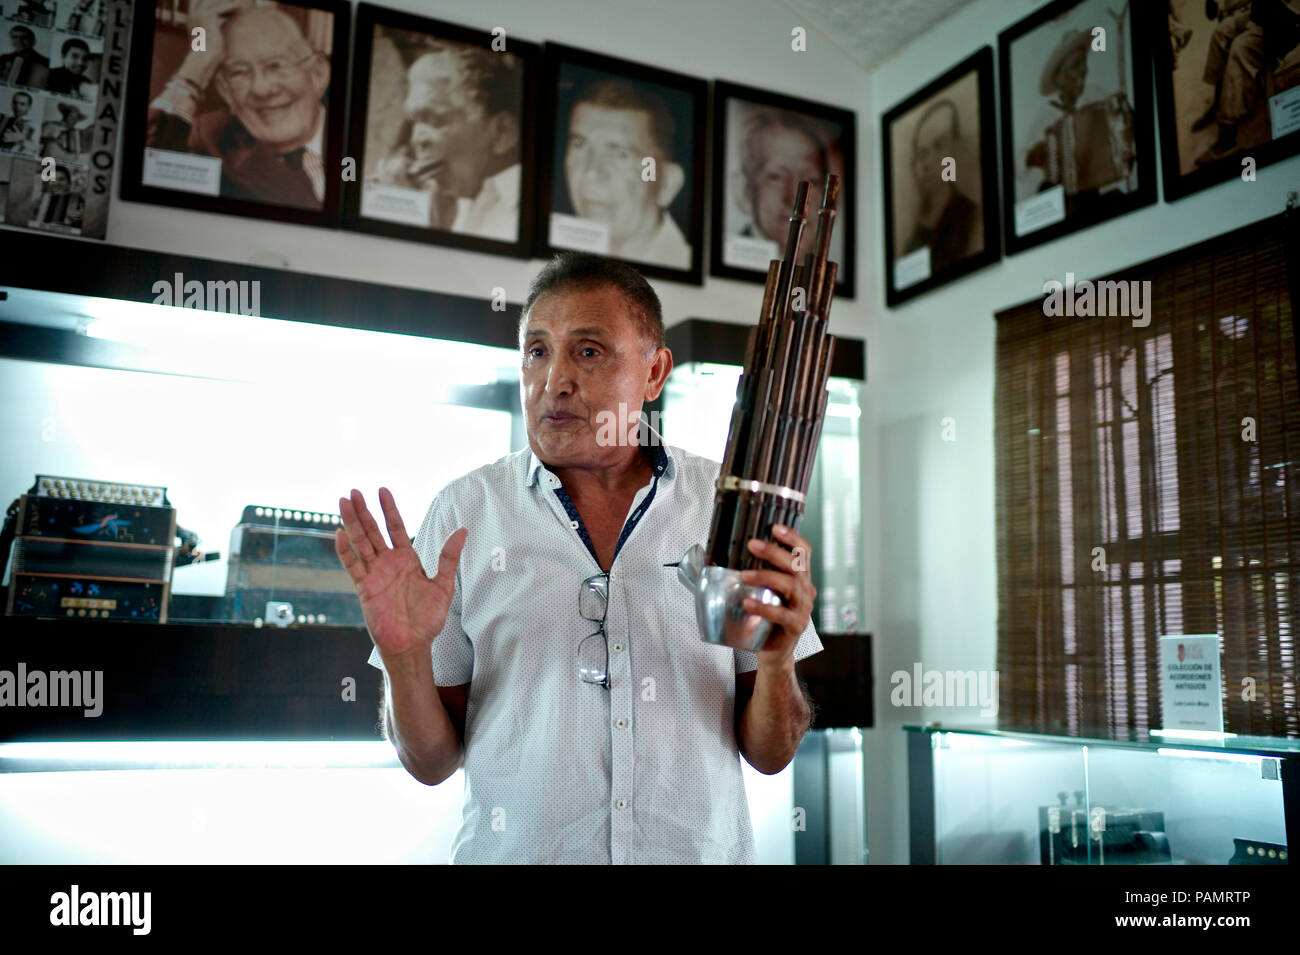 Compositeur vallenato colombien Beto Murgas à son domicile et musée de l'accordéon, d'organiser la première anche libre instruments développés en Chine au 2e BCE milleneum, connu sous le nom de Sheng Banque D'Images